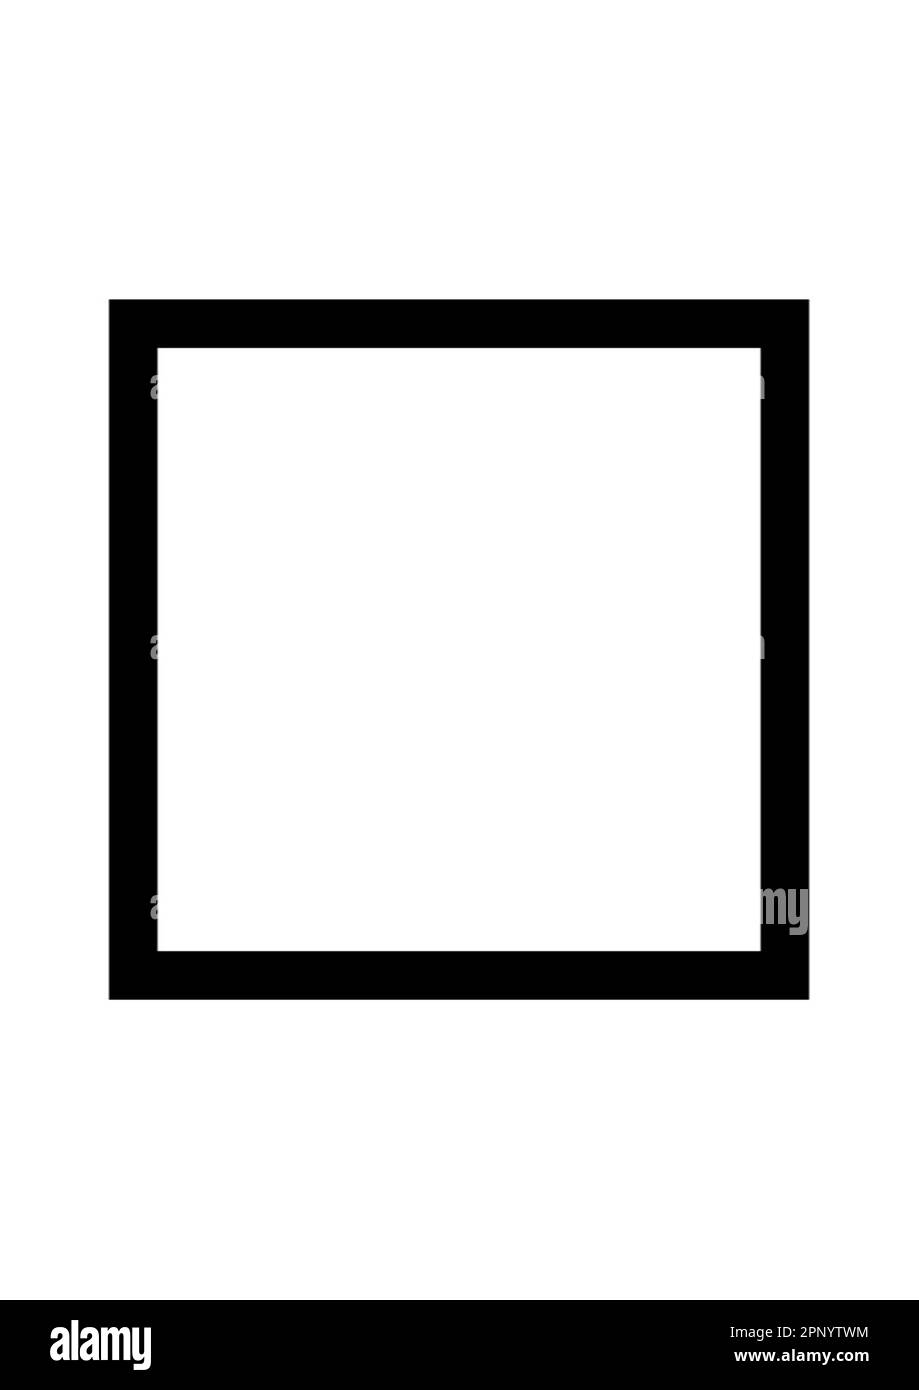 Quadrato nero su bianco. Il simbolo del gioco di mentalismo psicologico con le lettere del cerchio Zener. Foto Stock